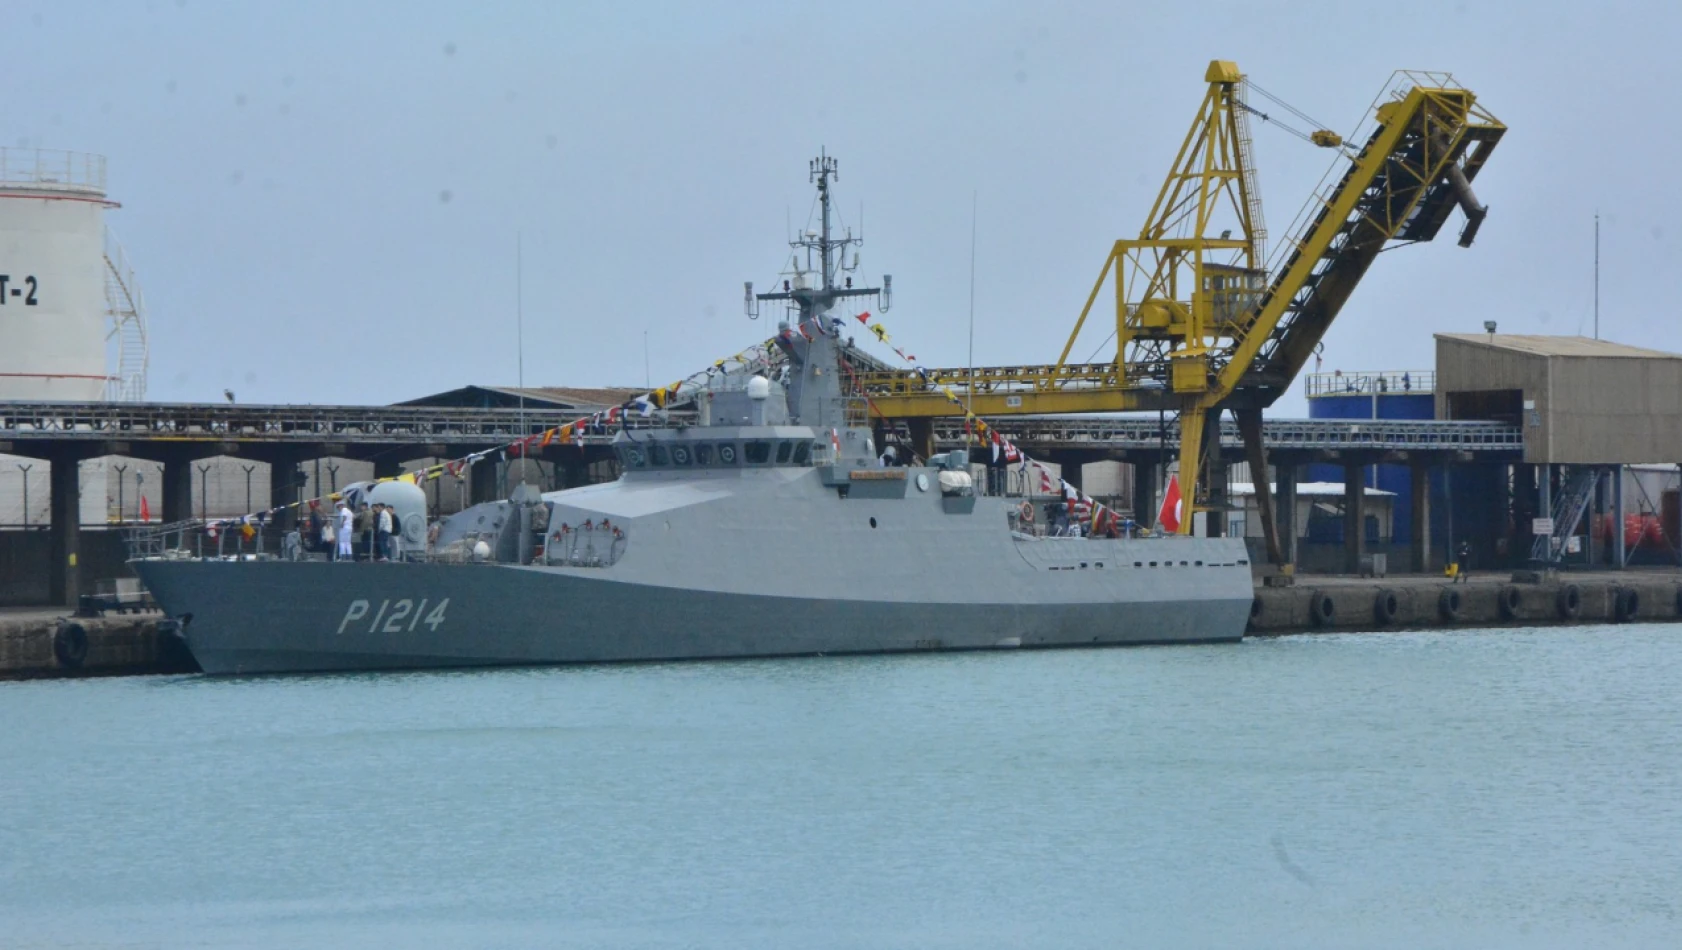 TCG gemisi, İnebolu'da ziyarete açıldı